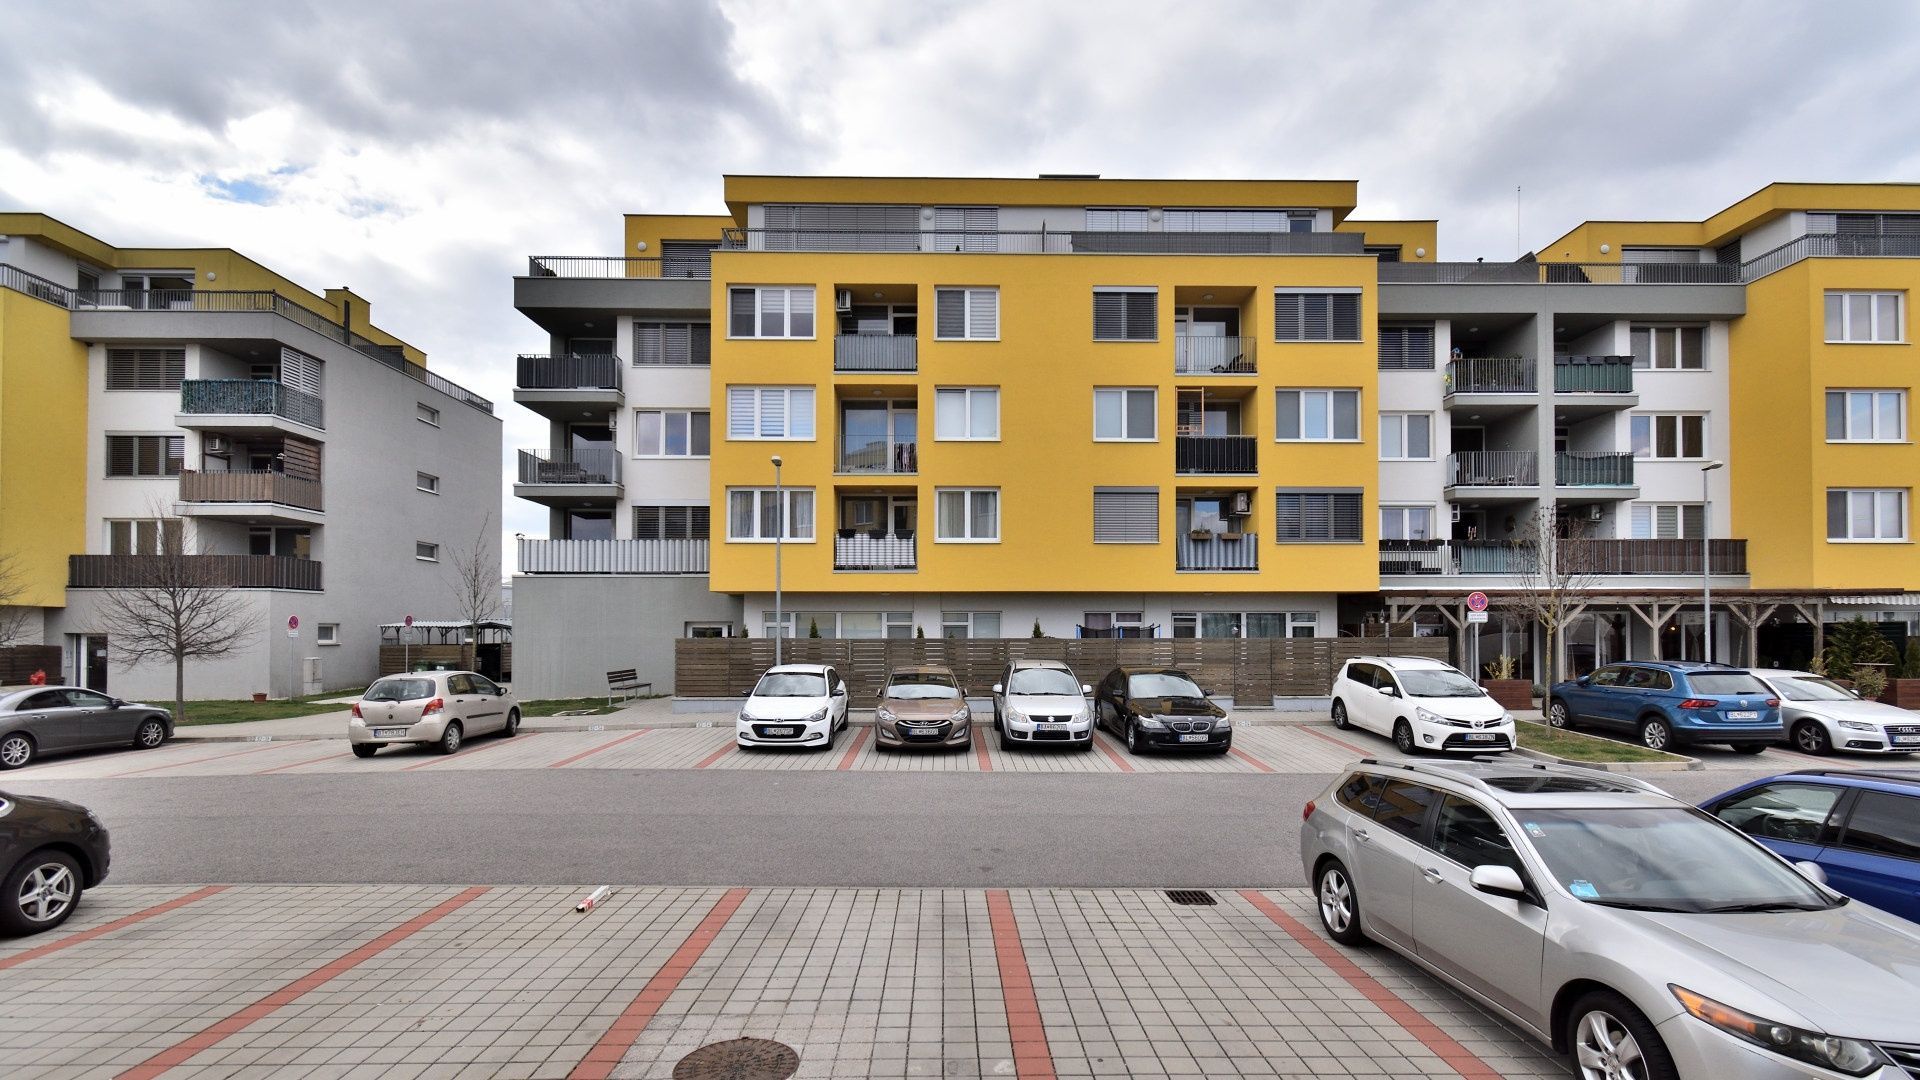 PRENAJATÉ: 2 izbový byt, Opletalova 92, Devínska Nova Ves, Bratislava IV – TOP PONUKA 4679 | Roweservices s.r.o